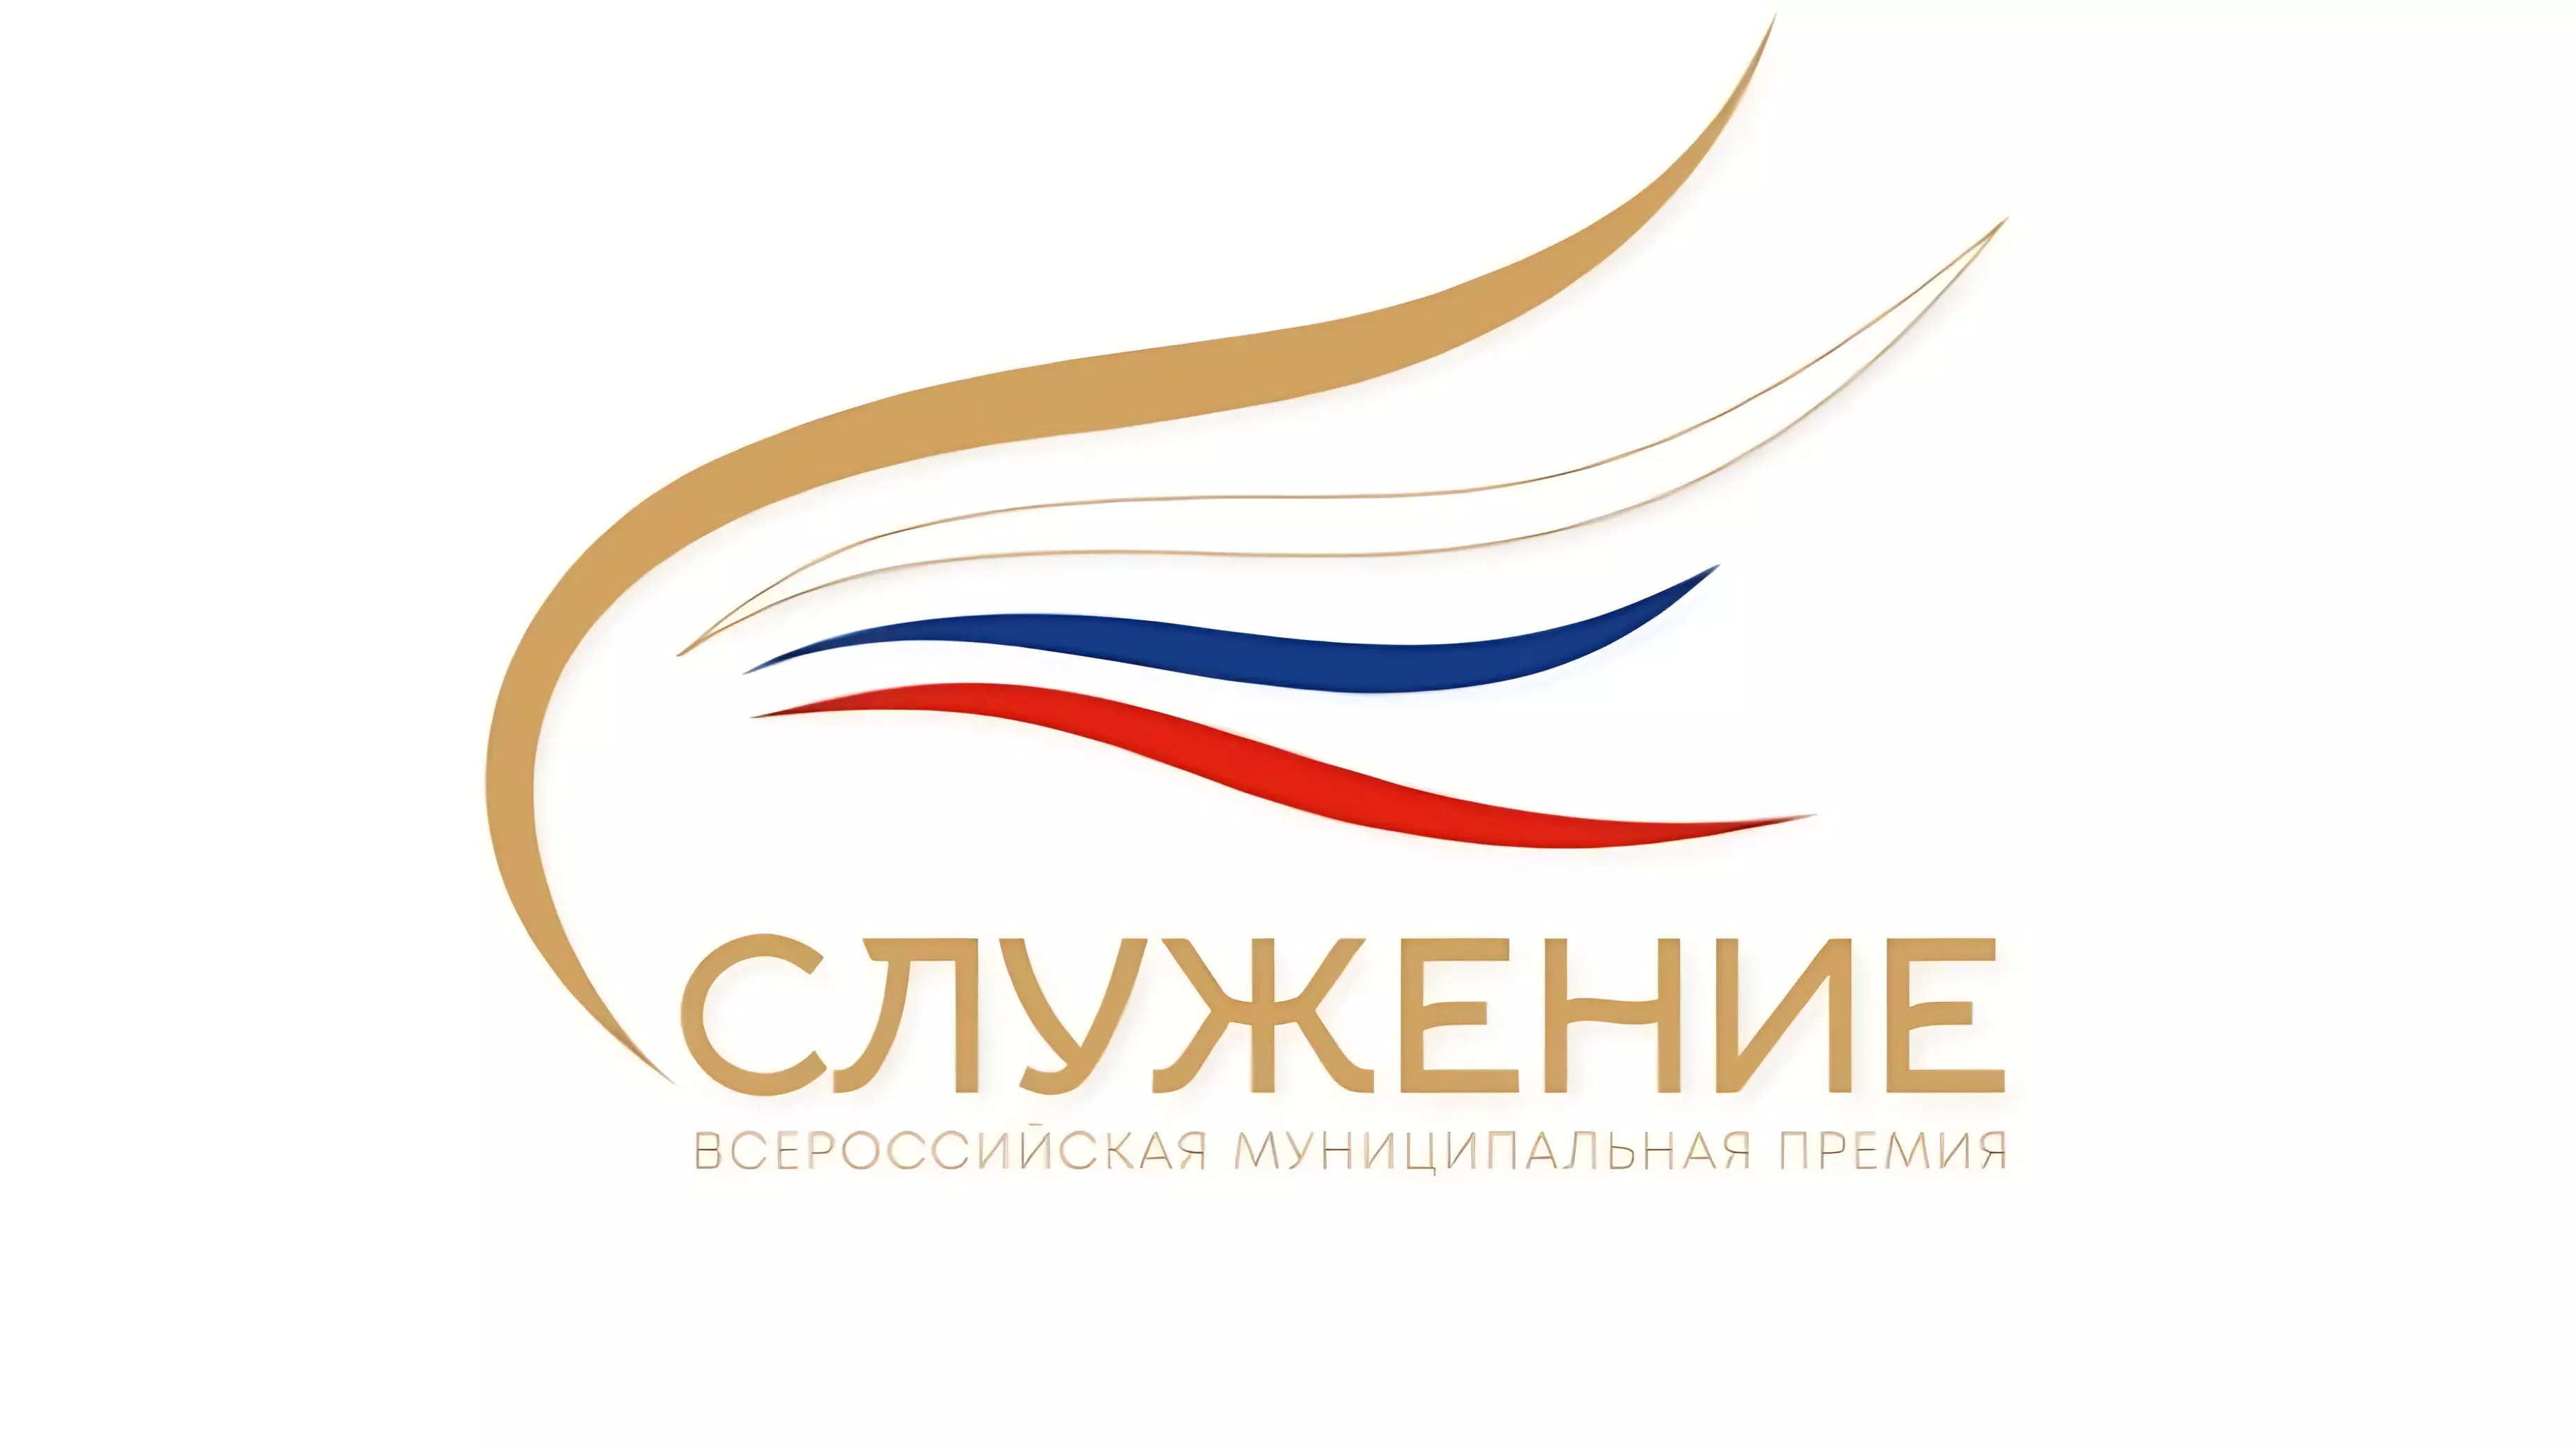 Всероссийская муниципальная премия «Служение» работает в Хабаровском крае